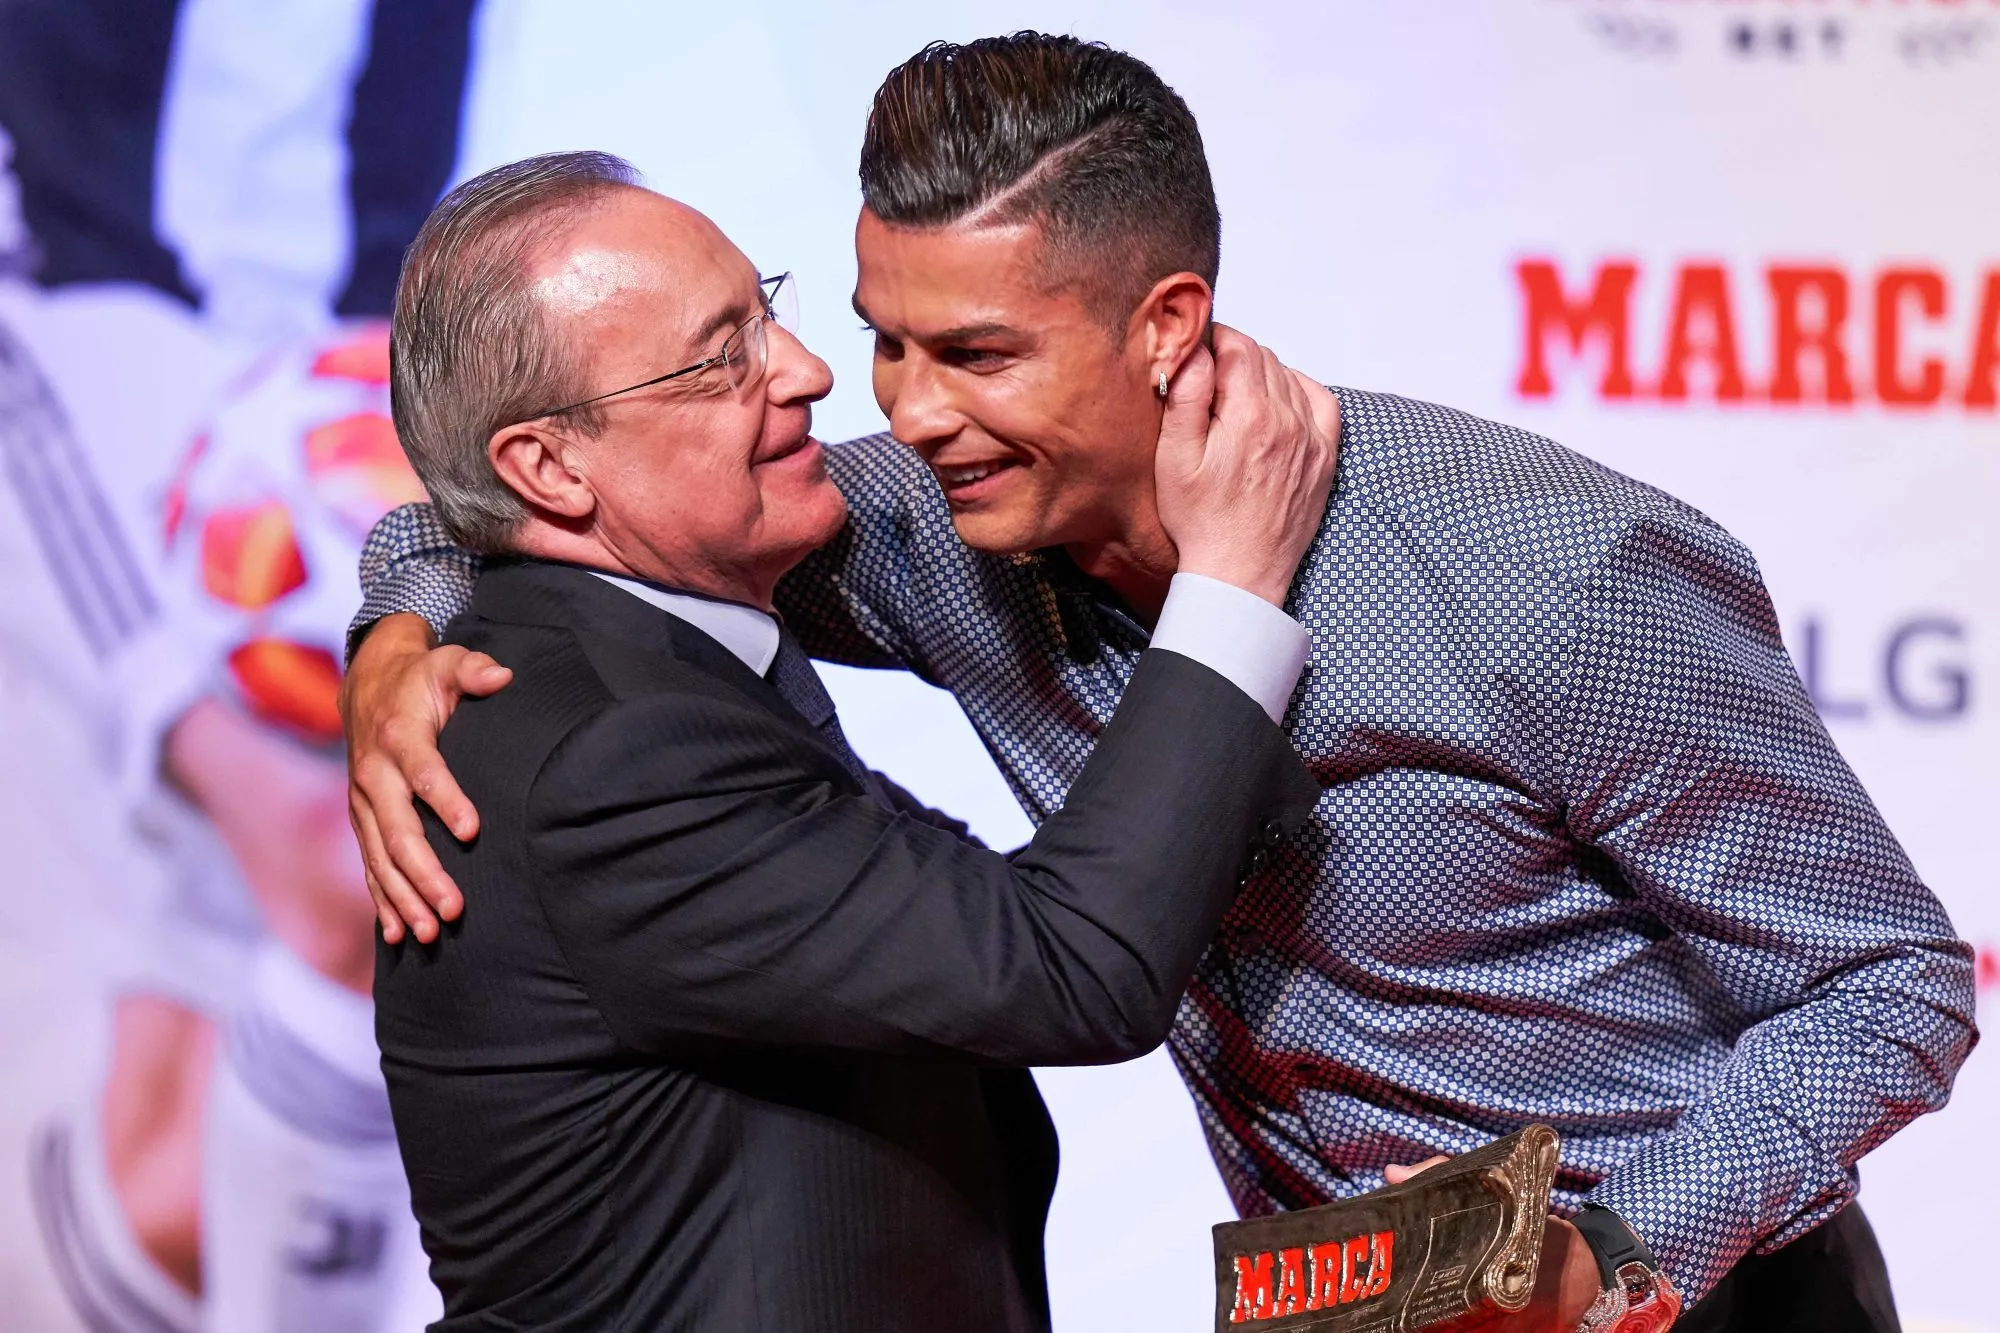 Dans de nouveaux extraits audios de 2012, Florentino Pérez se paie Cristiano Ronaldo et José Mourinho